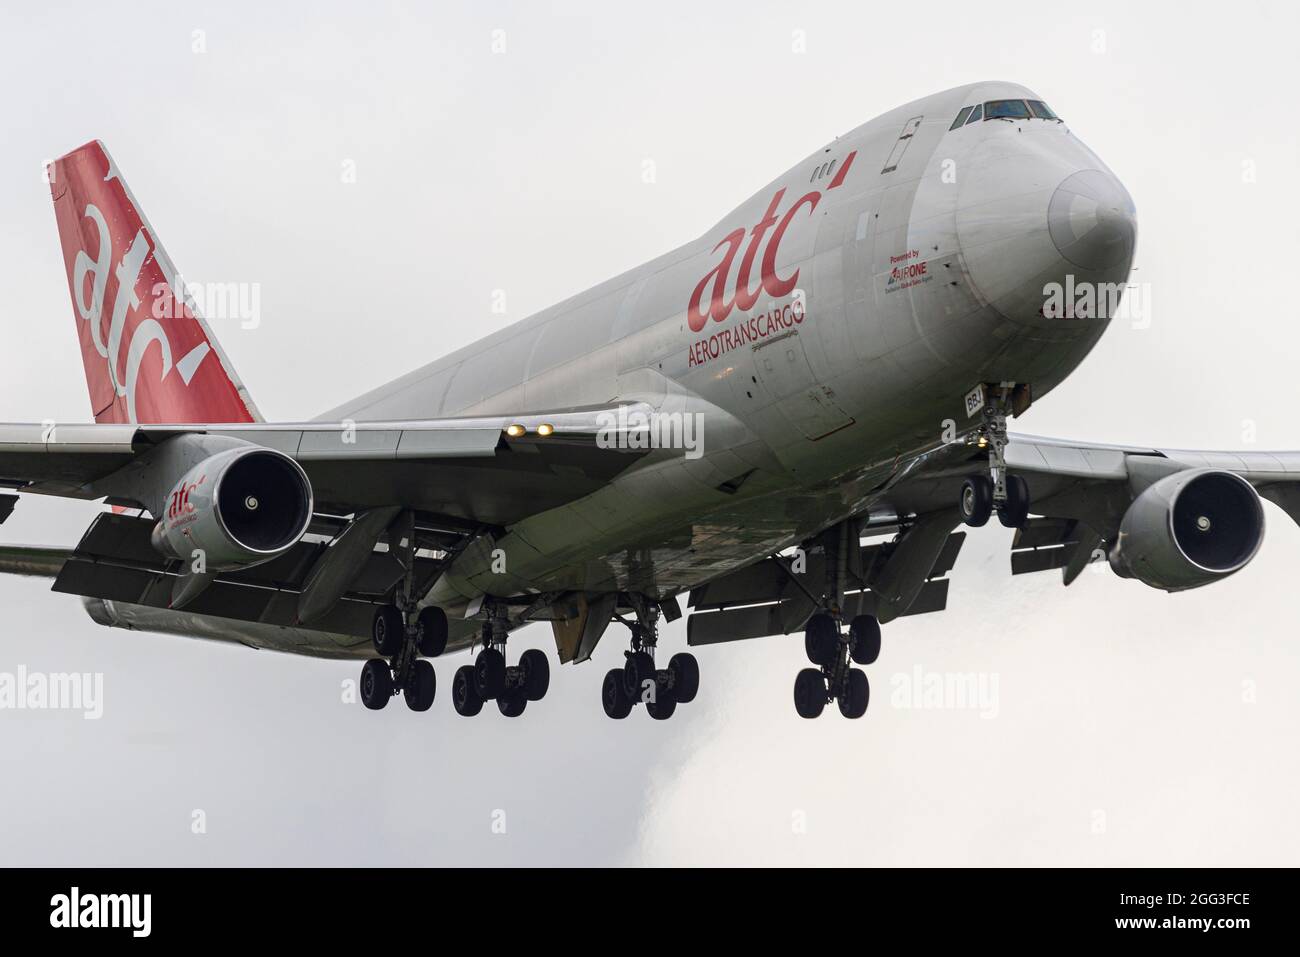 Aerotranscargo, atc, Boeing 747 versione freighter del jet di linea Jumbo Jet ER-BBJ che atterra all'aeroporto di Heathrow, Regno Unito. Approccio alla terra Foto Stock